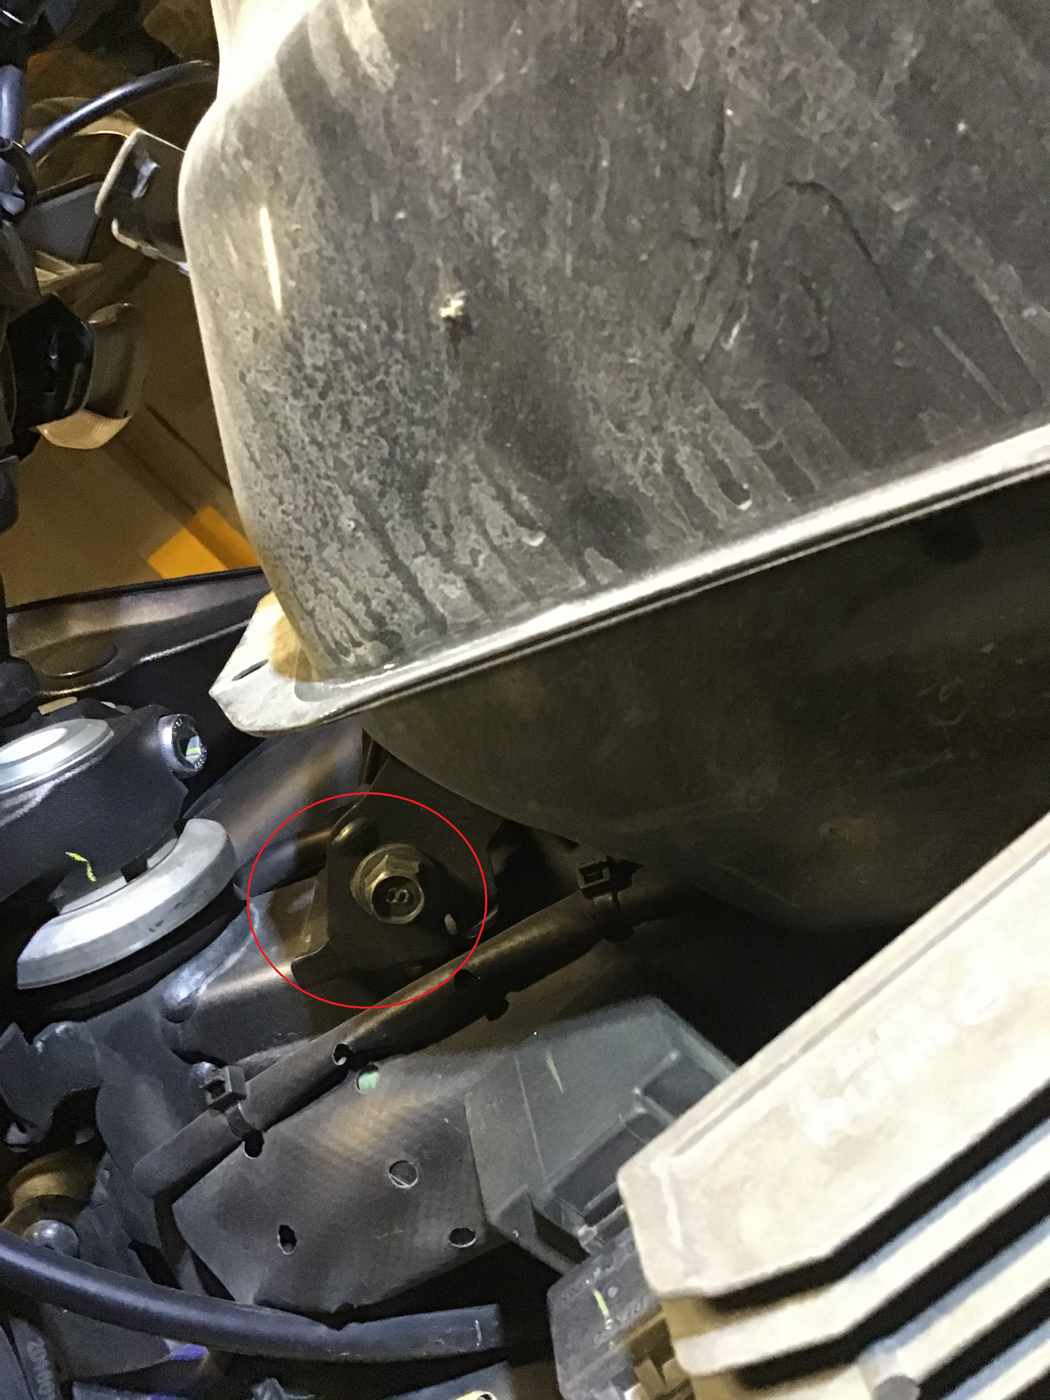 Yamaha Tracer 700 Benzin Deposu Nasıl sökülür? Endurokan